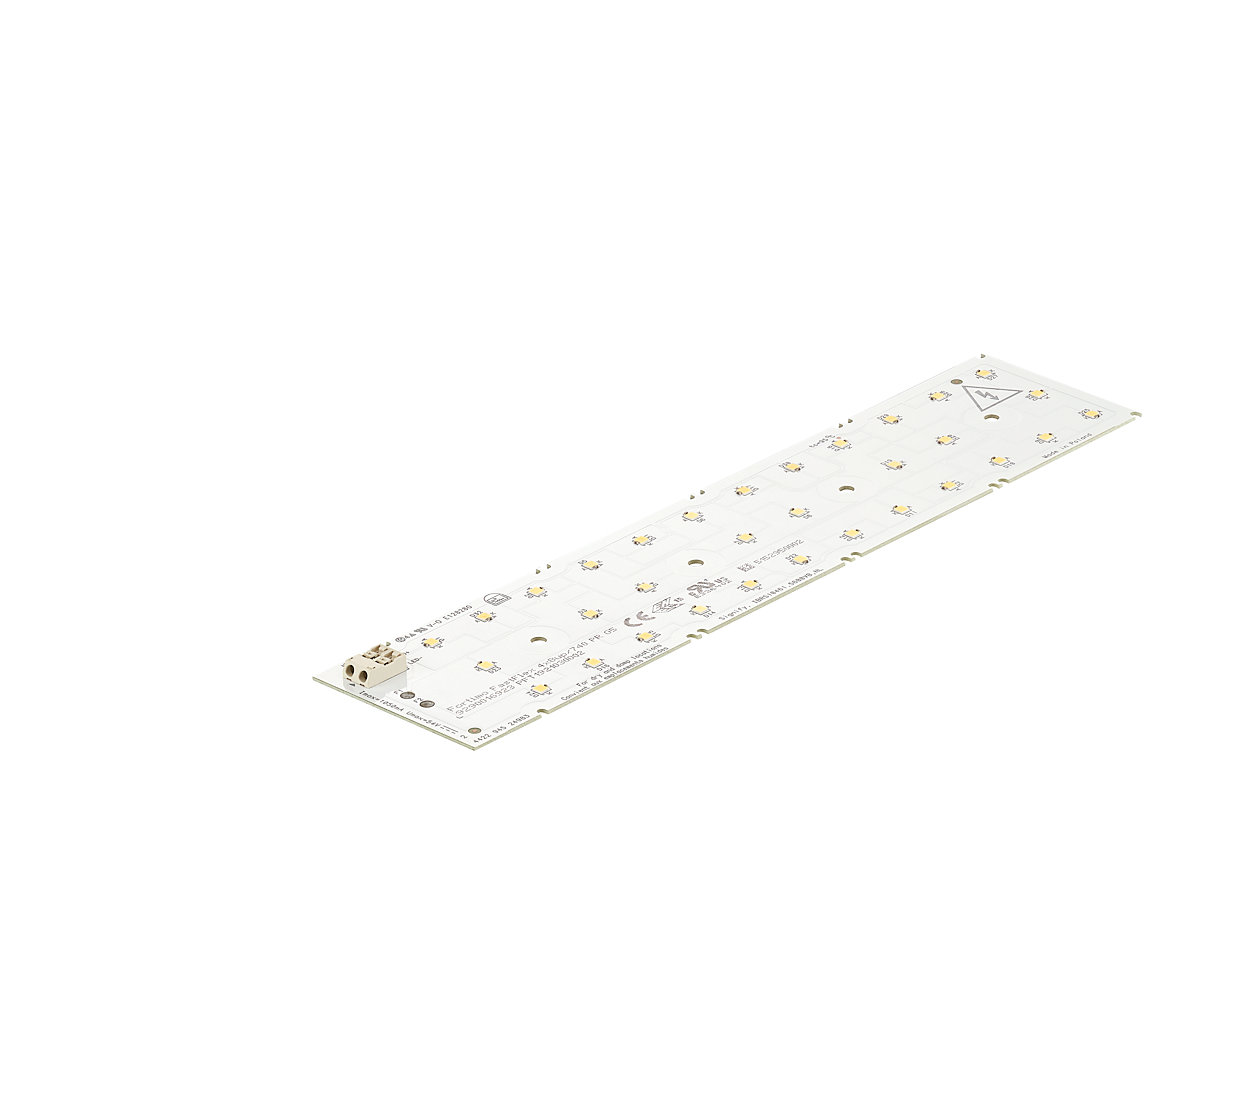 Approche flexible du système LED pour l'éclairage LED extérieur et industriel